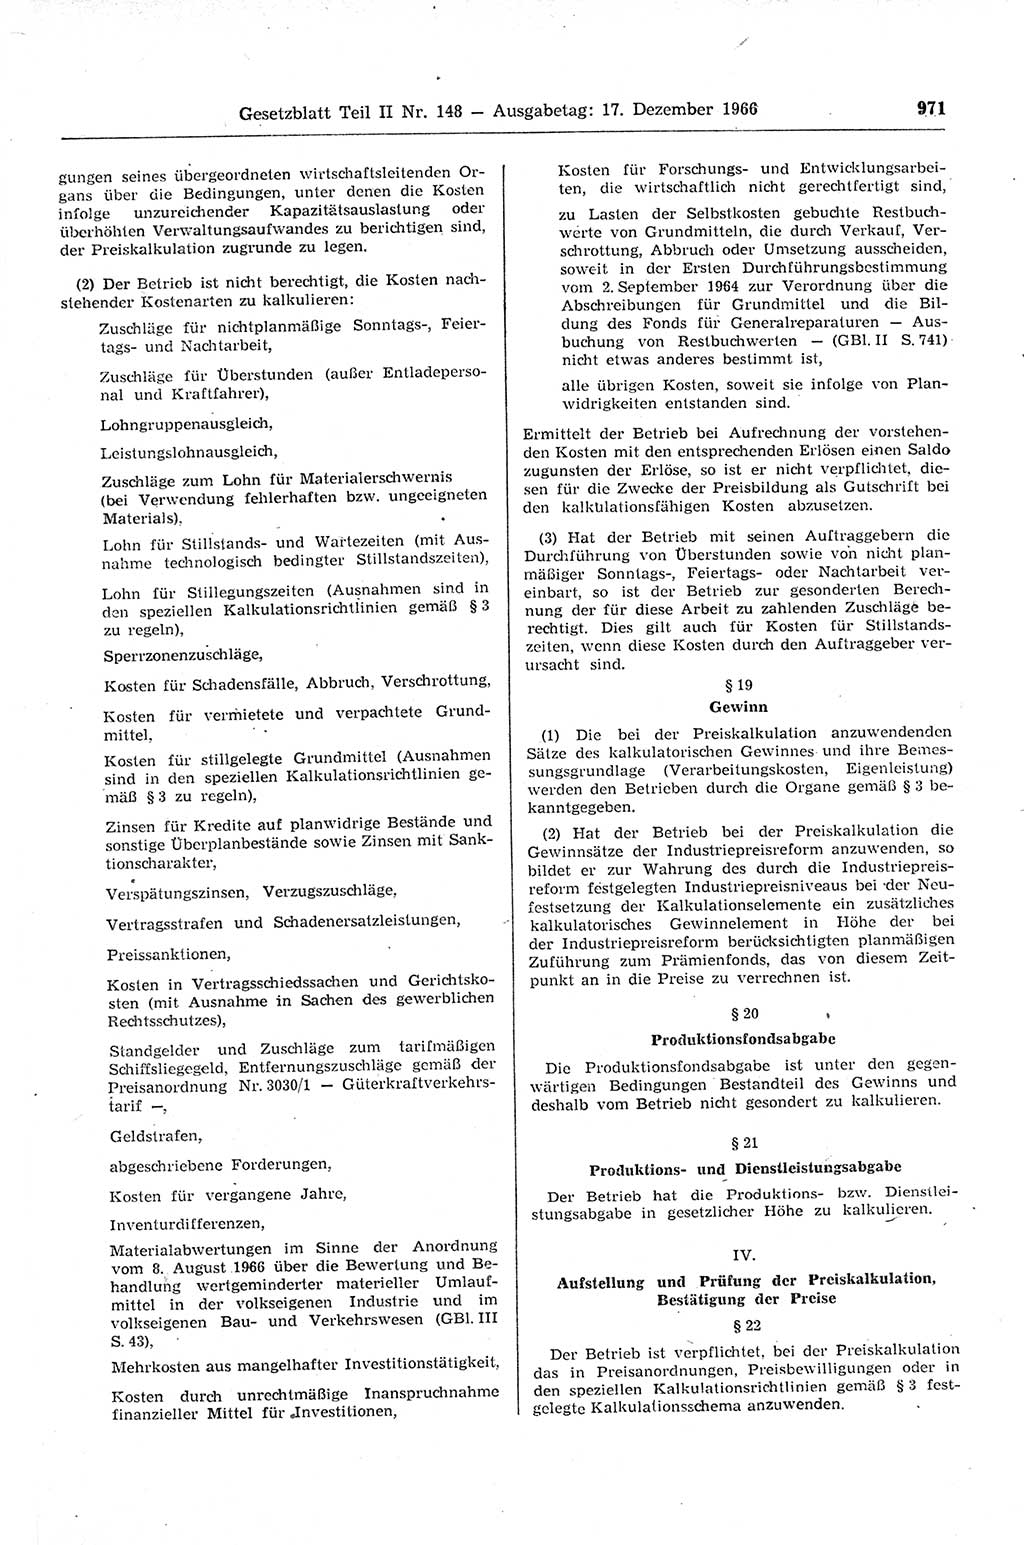 Gesetzblatt (GBl.) der Deutschen Demokratischen Republik (DDR) Teil ⅠⅠ 1966, Seite 971 (GBl. DDR ⅠⅠ 1966, S. 971)